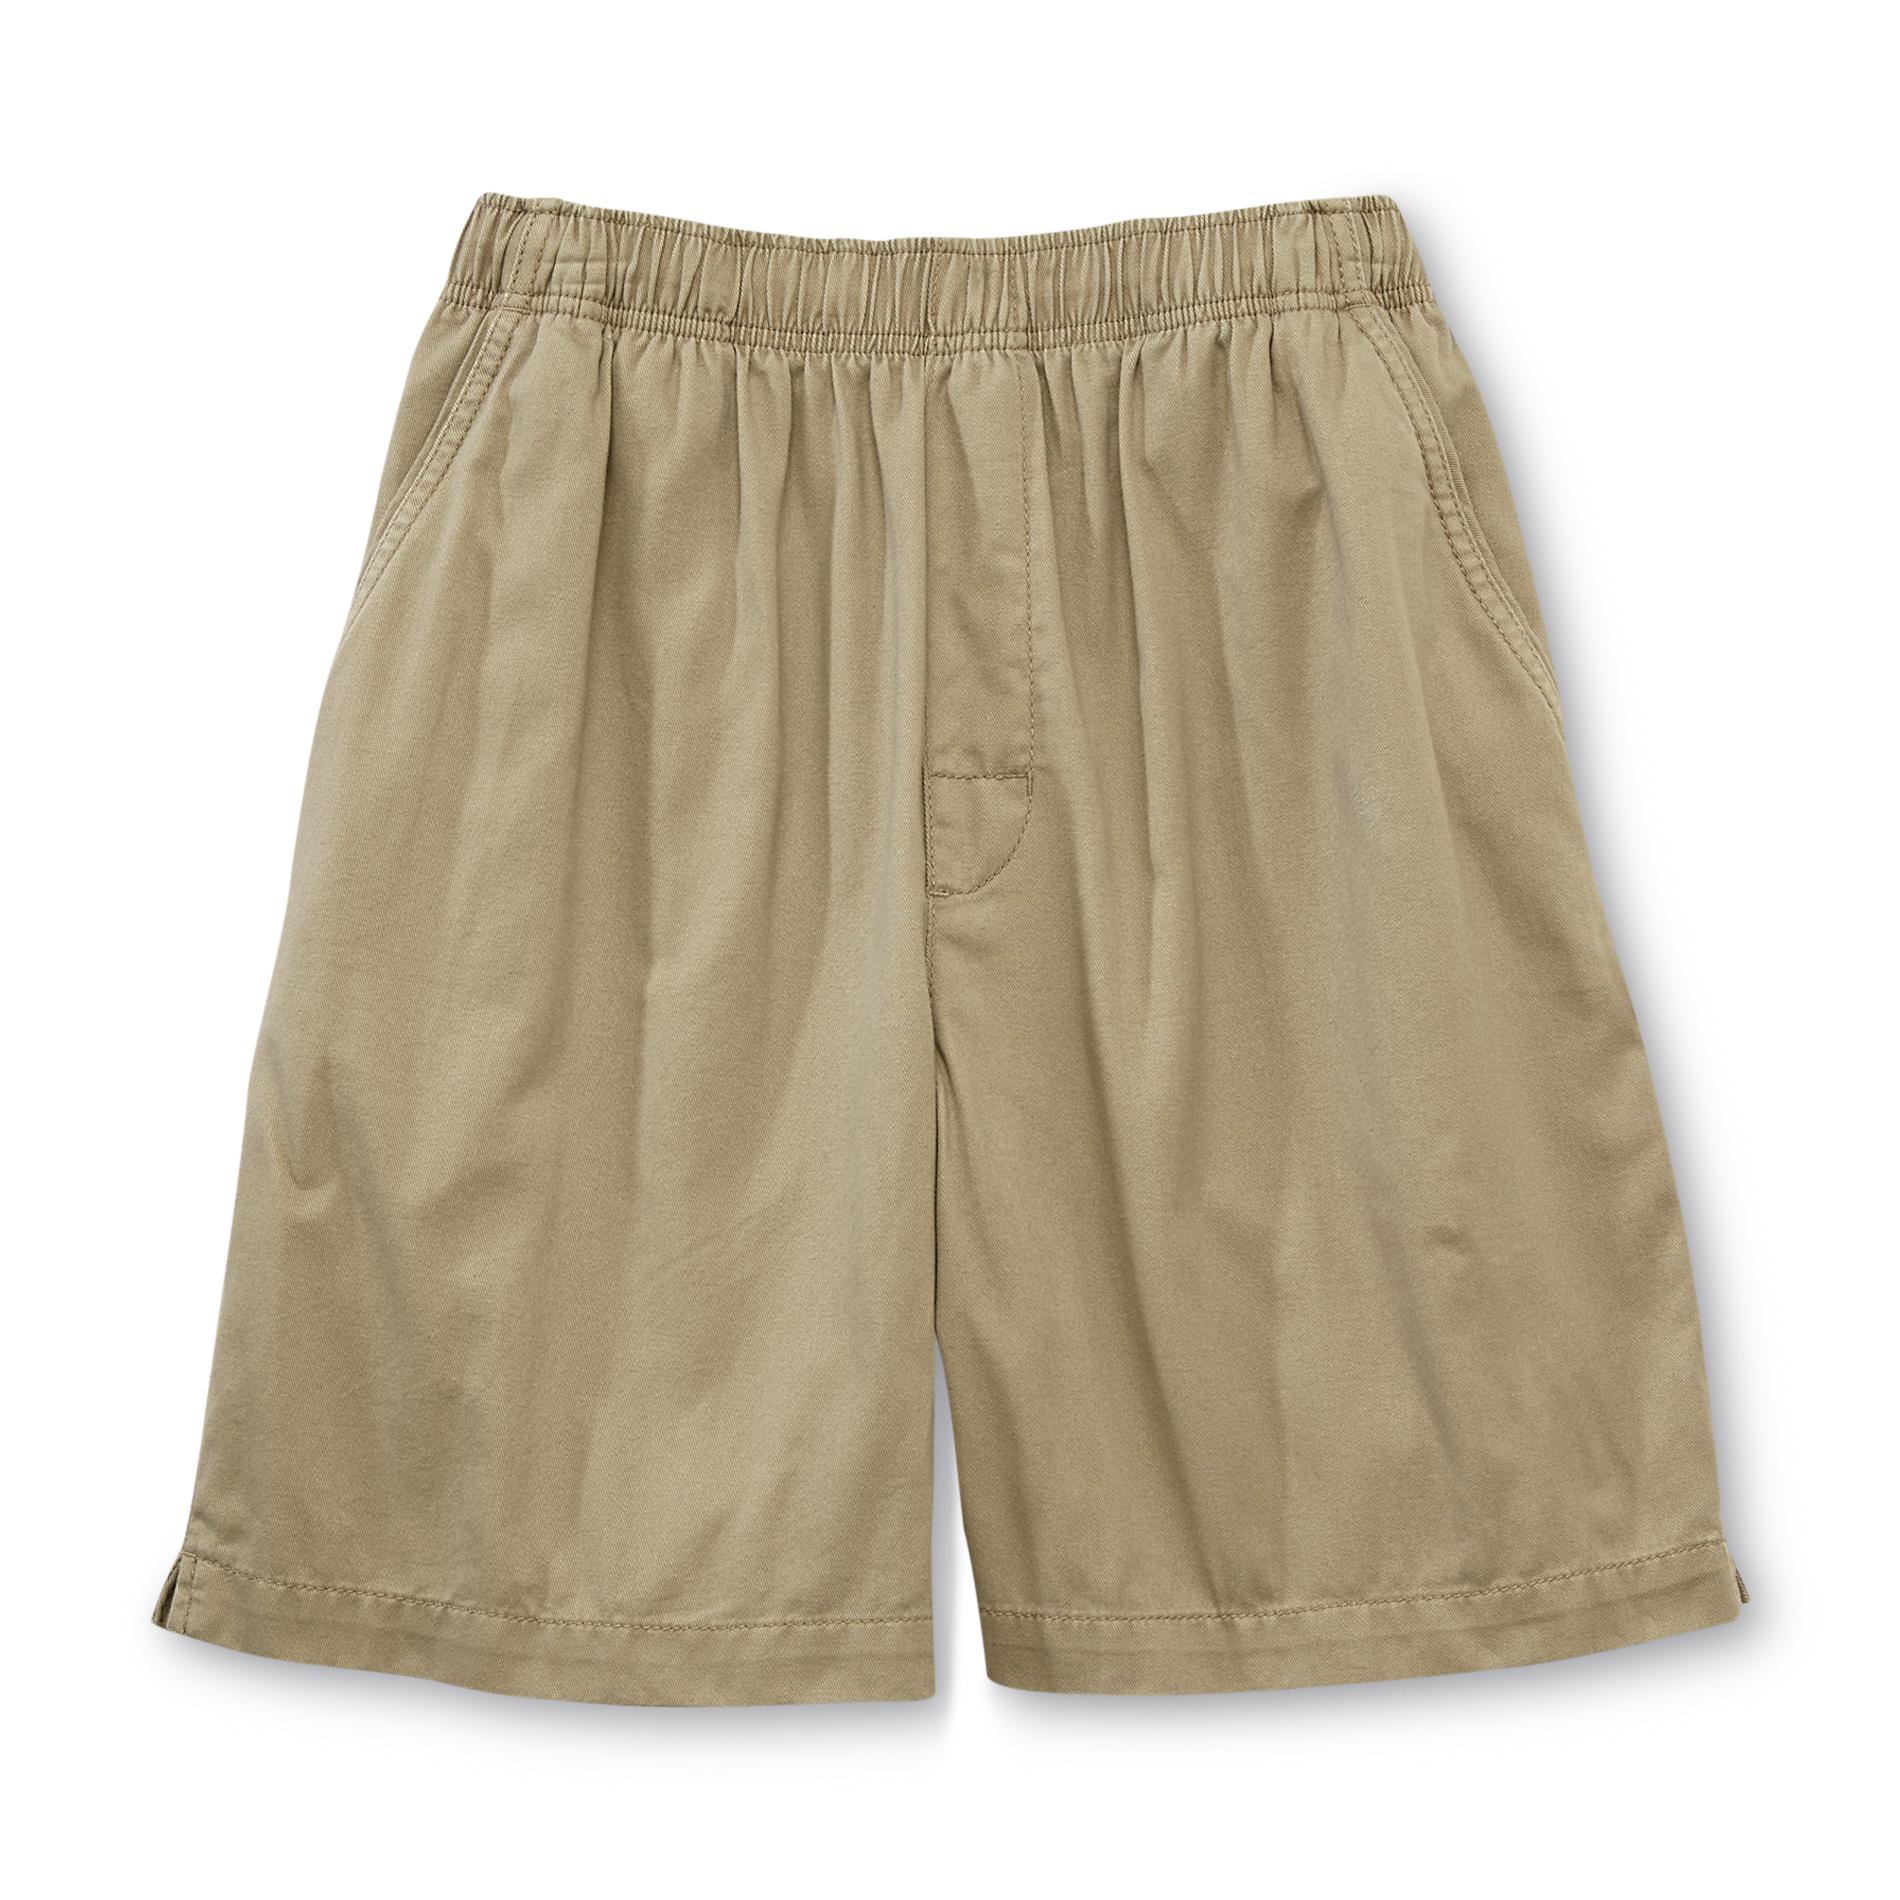 Basic Editions Men's Big Twill Shorts